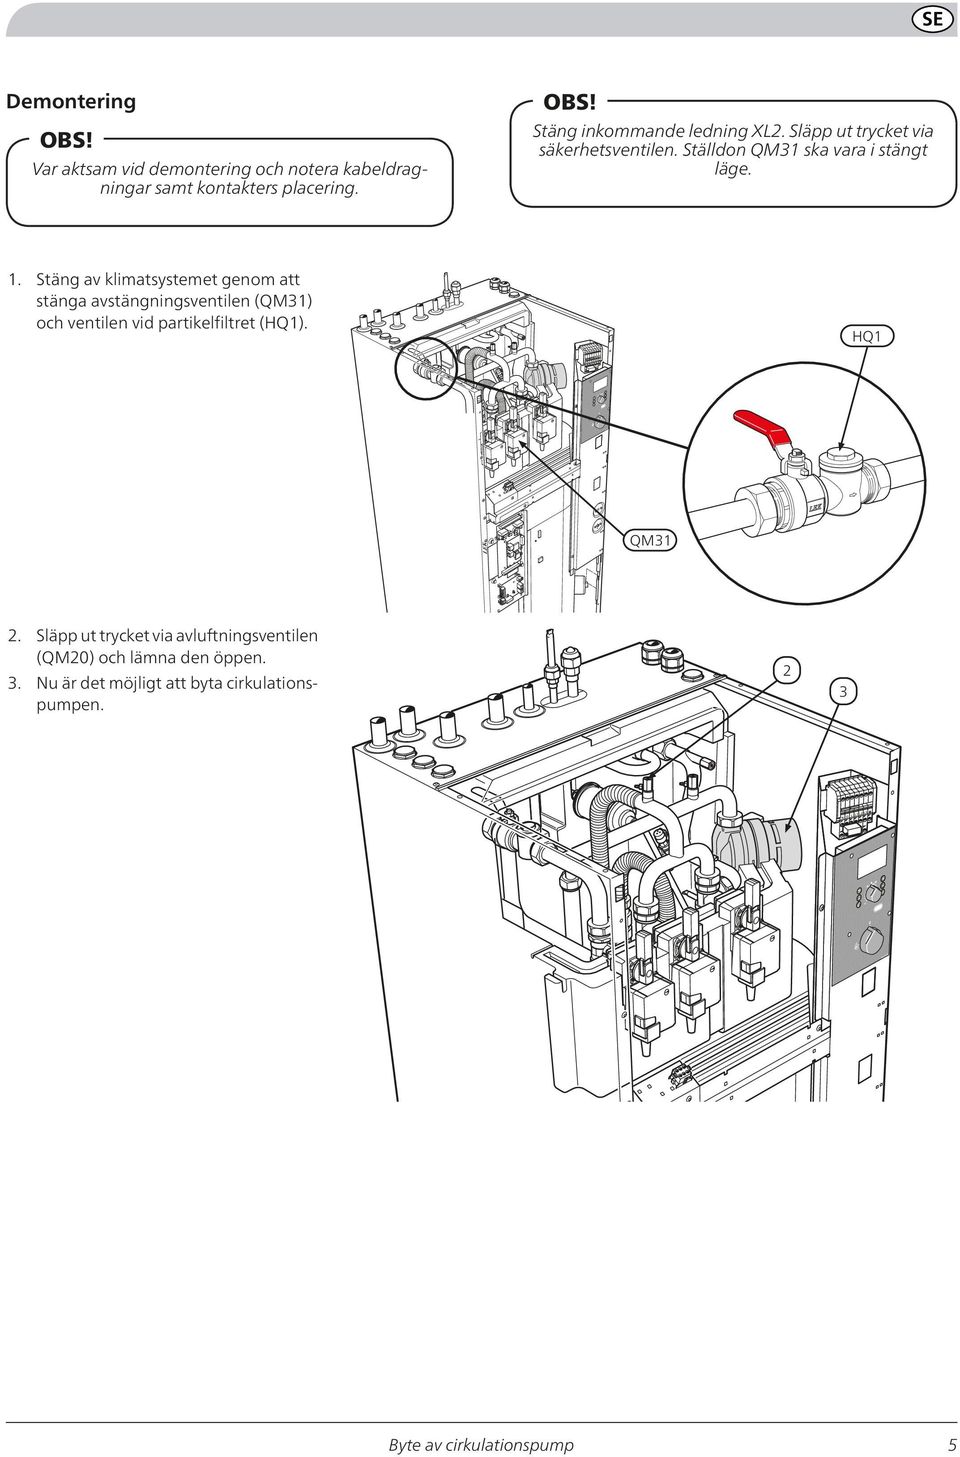 Stäng av klimatsystemet genom att stänga avstängningsventilen (QM31) och ventilen vid partikelfiltret (HQ1).